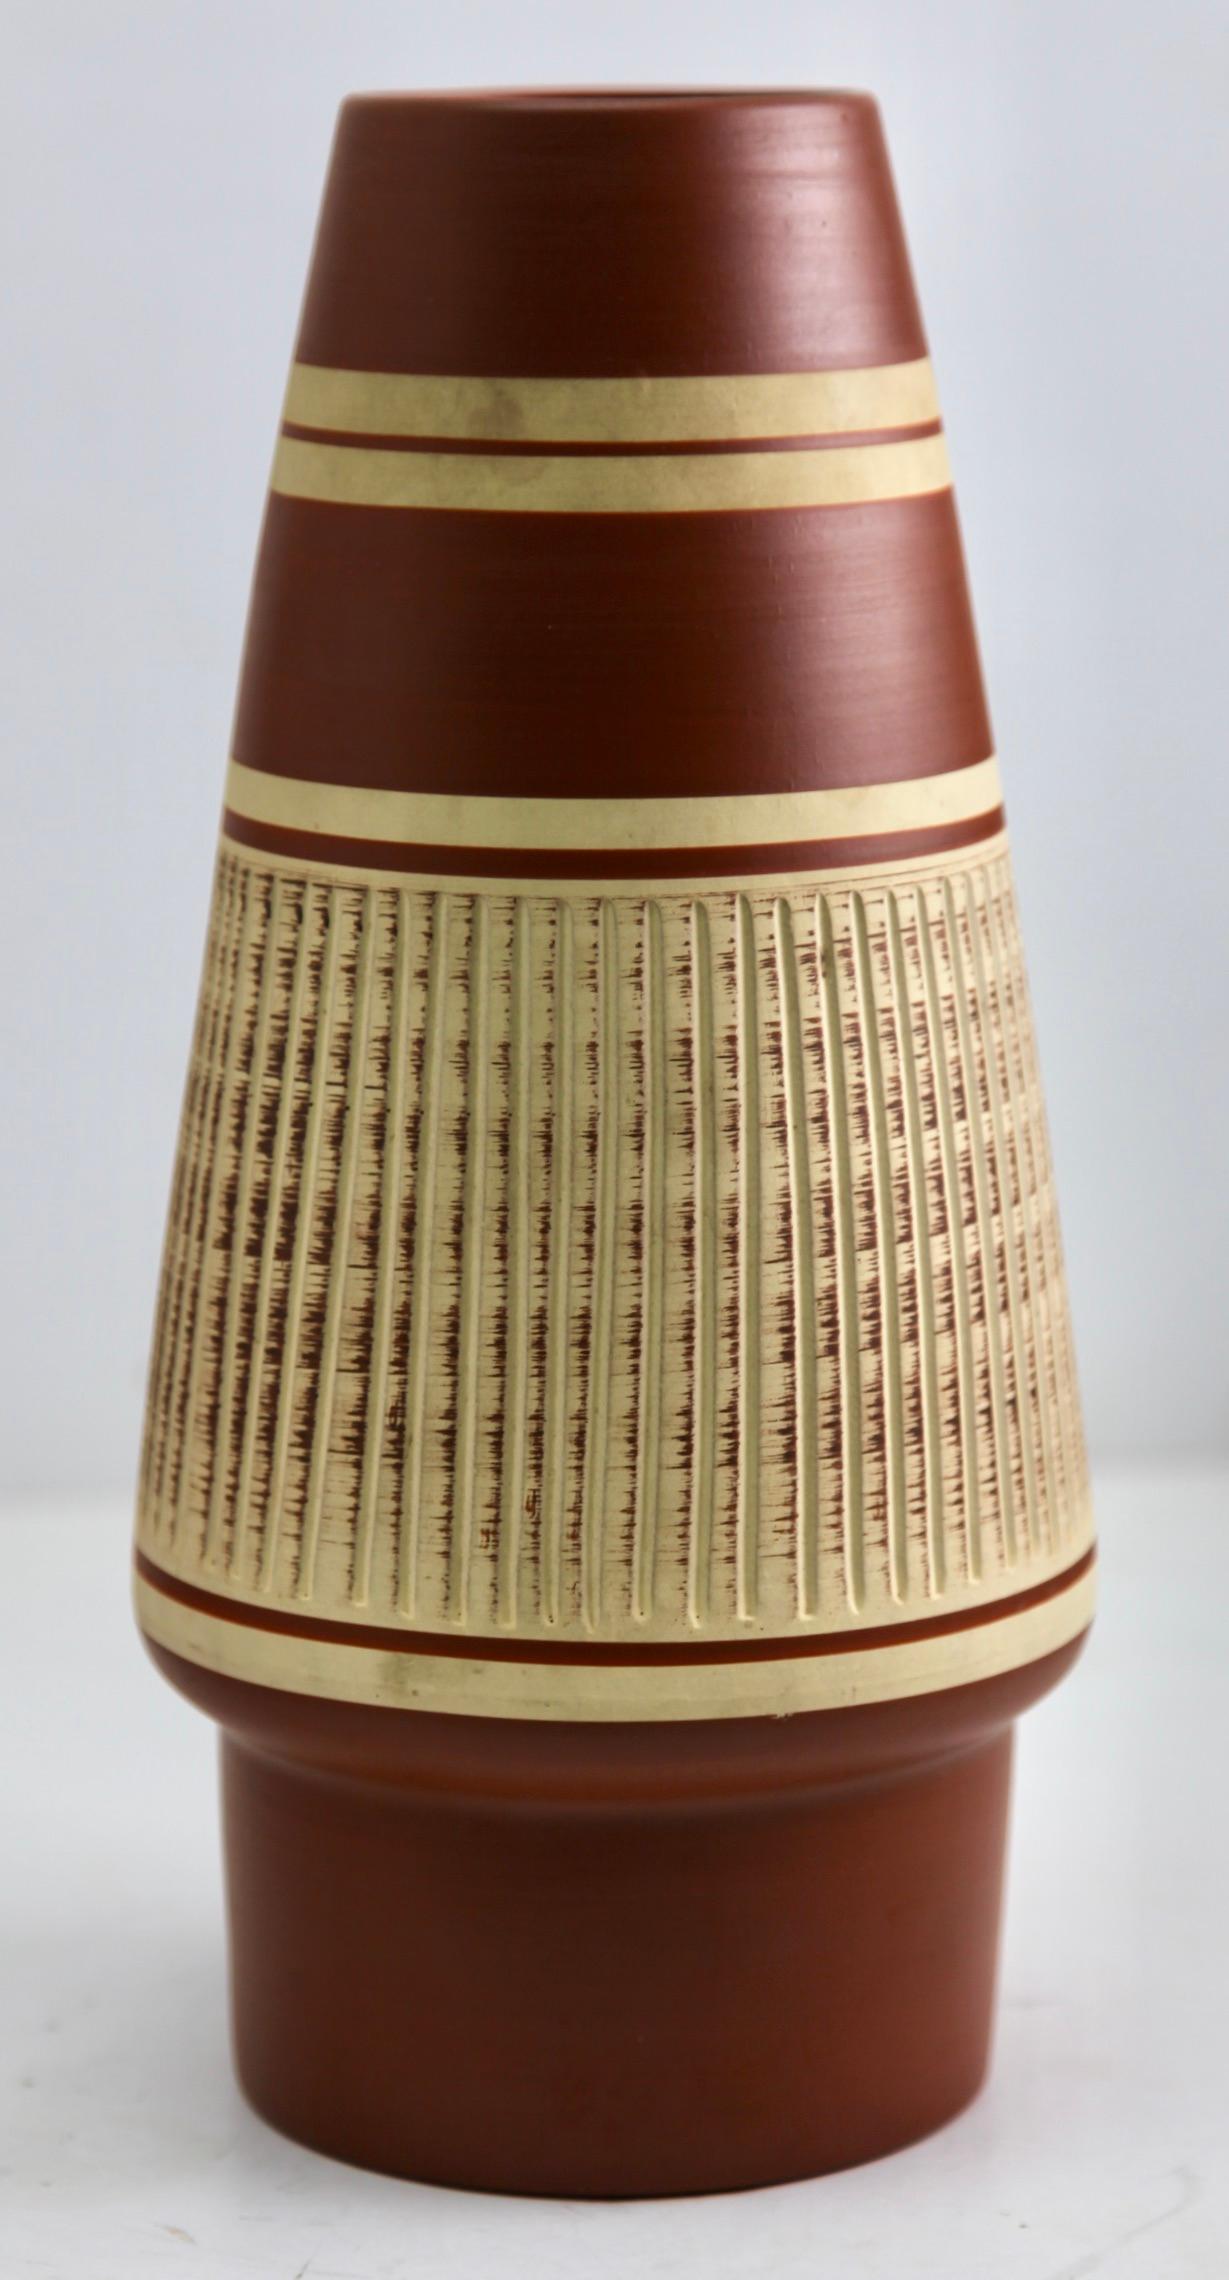 Ce vase vintage original a été produit dans les années 1970 en Allemagne. Il est fabriqué en poterie céramique.
Le fond est marqué du numéro de série du vase 353-30
Un design simple et minimaliste de l'ère du design des années 1960. 
Super rare